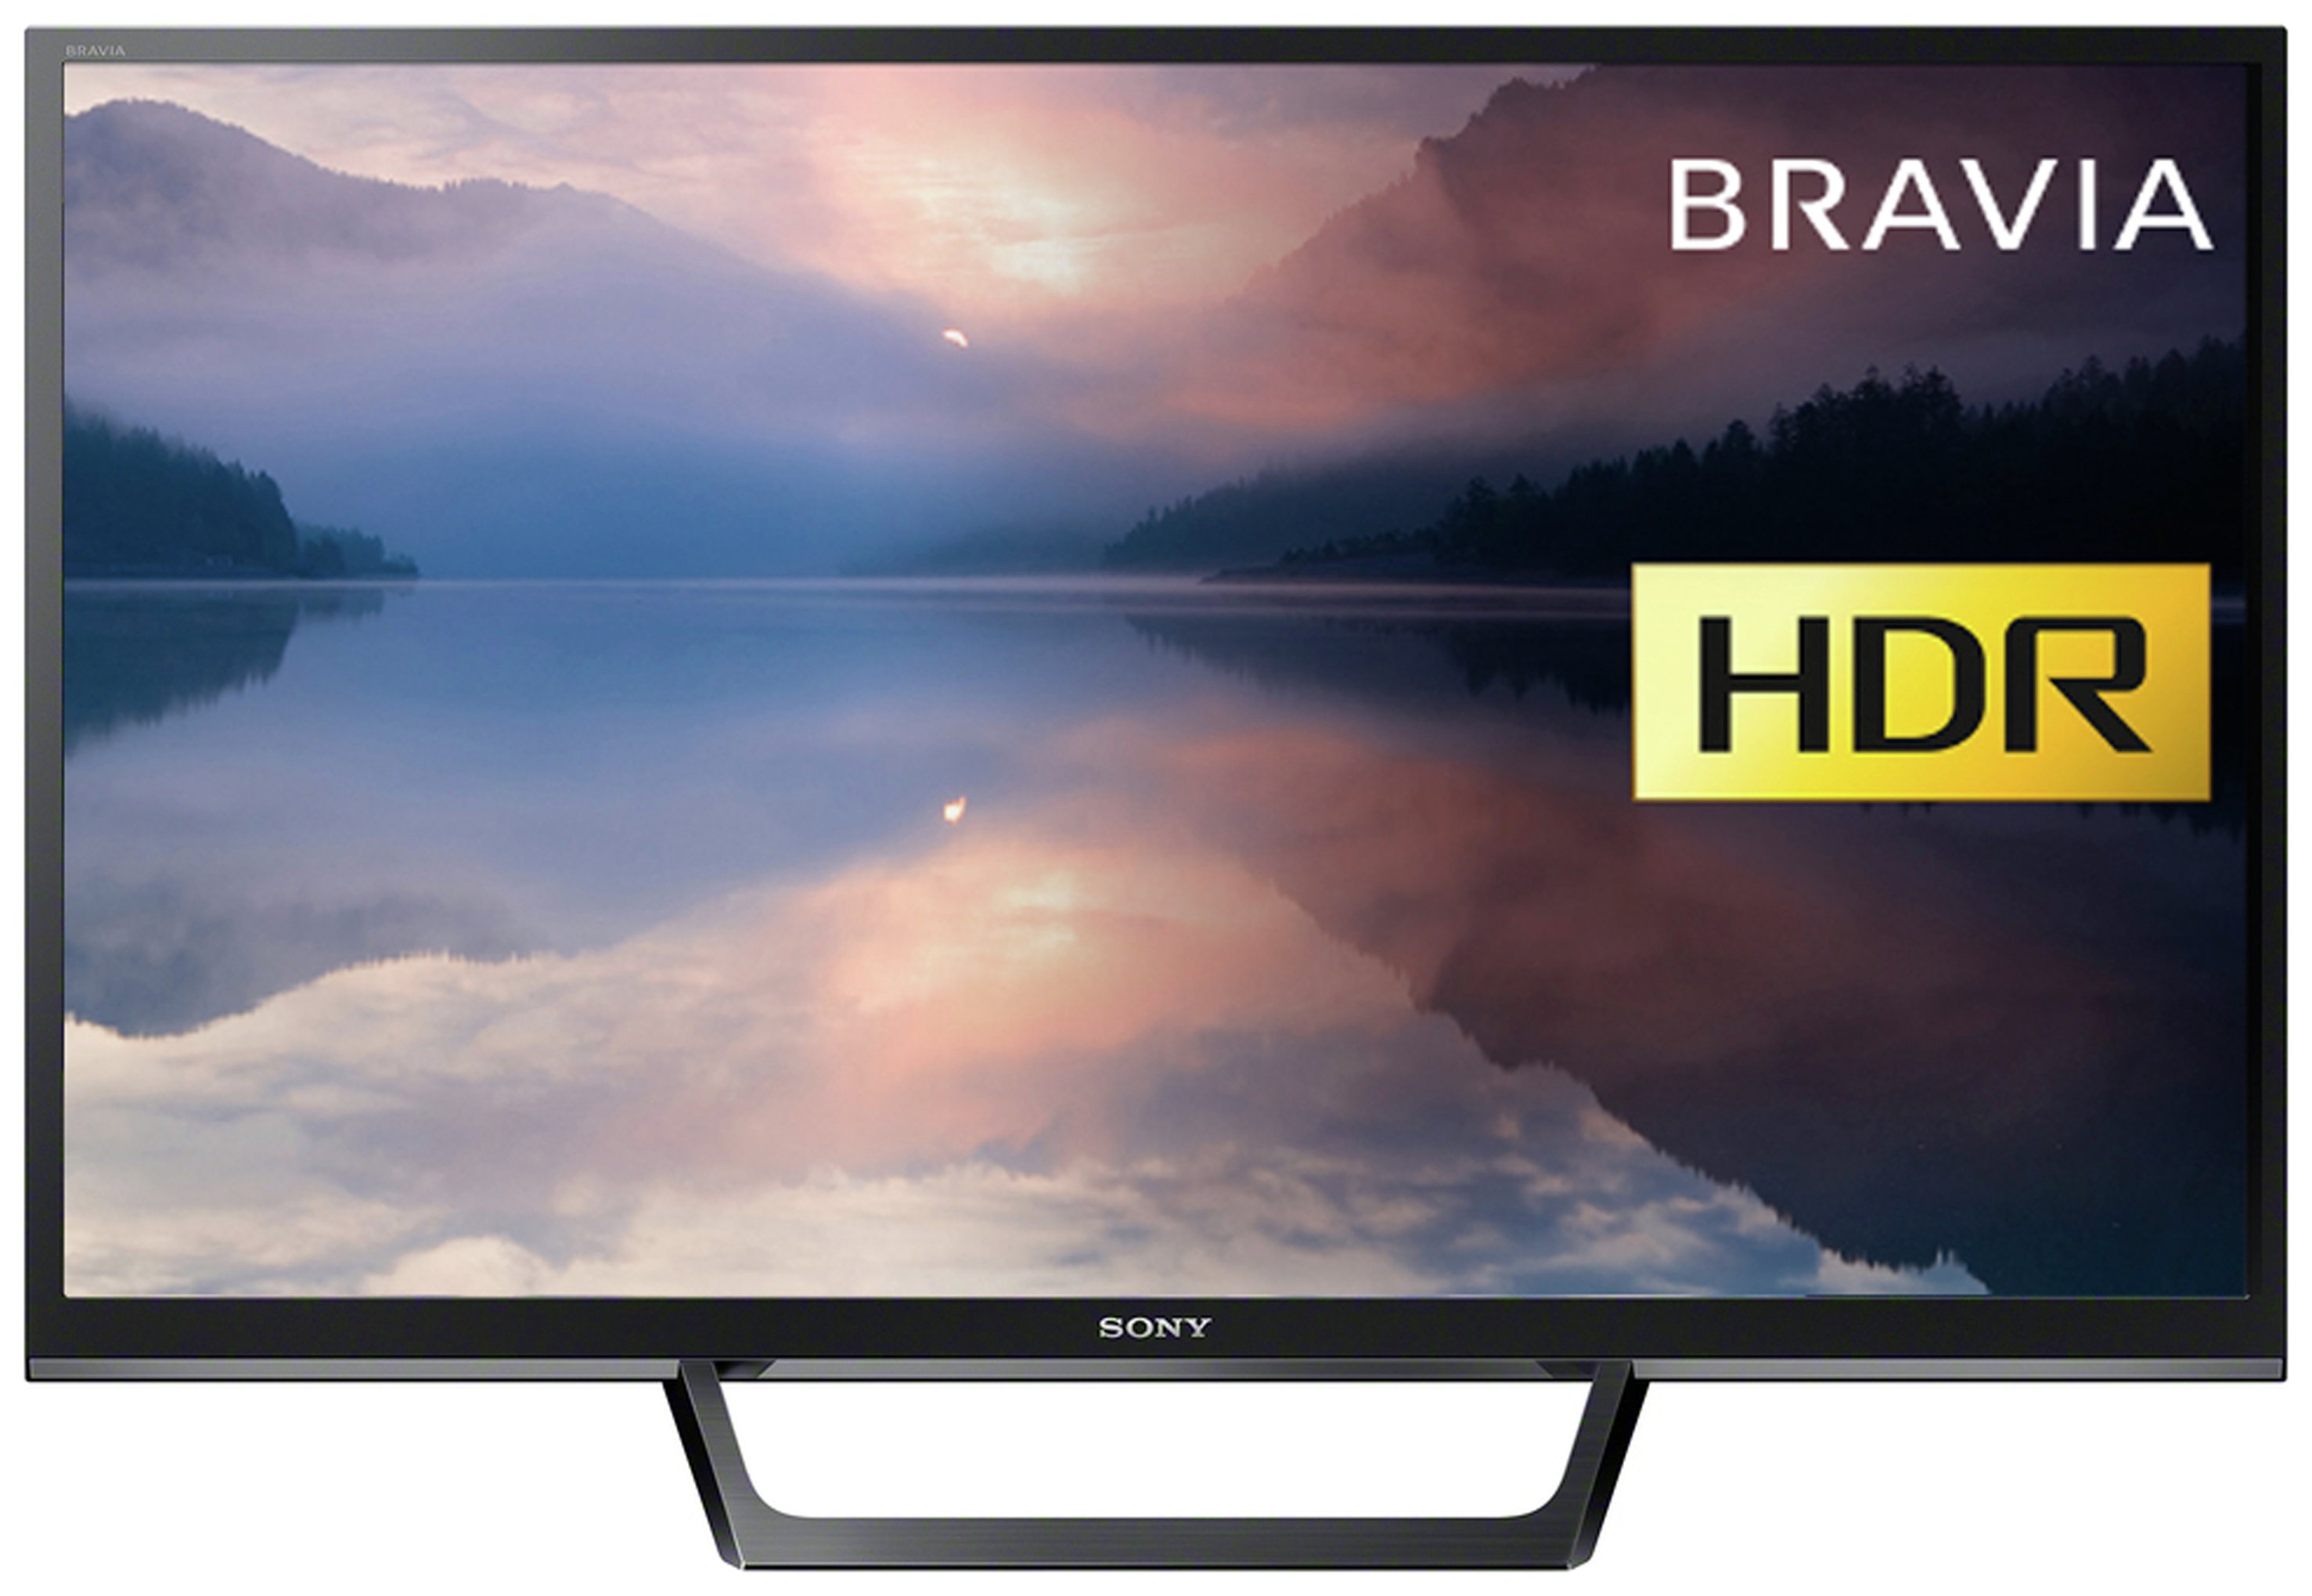 Sony KDL32RE403BU 32 Inch  Full HD TV. Review